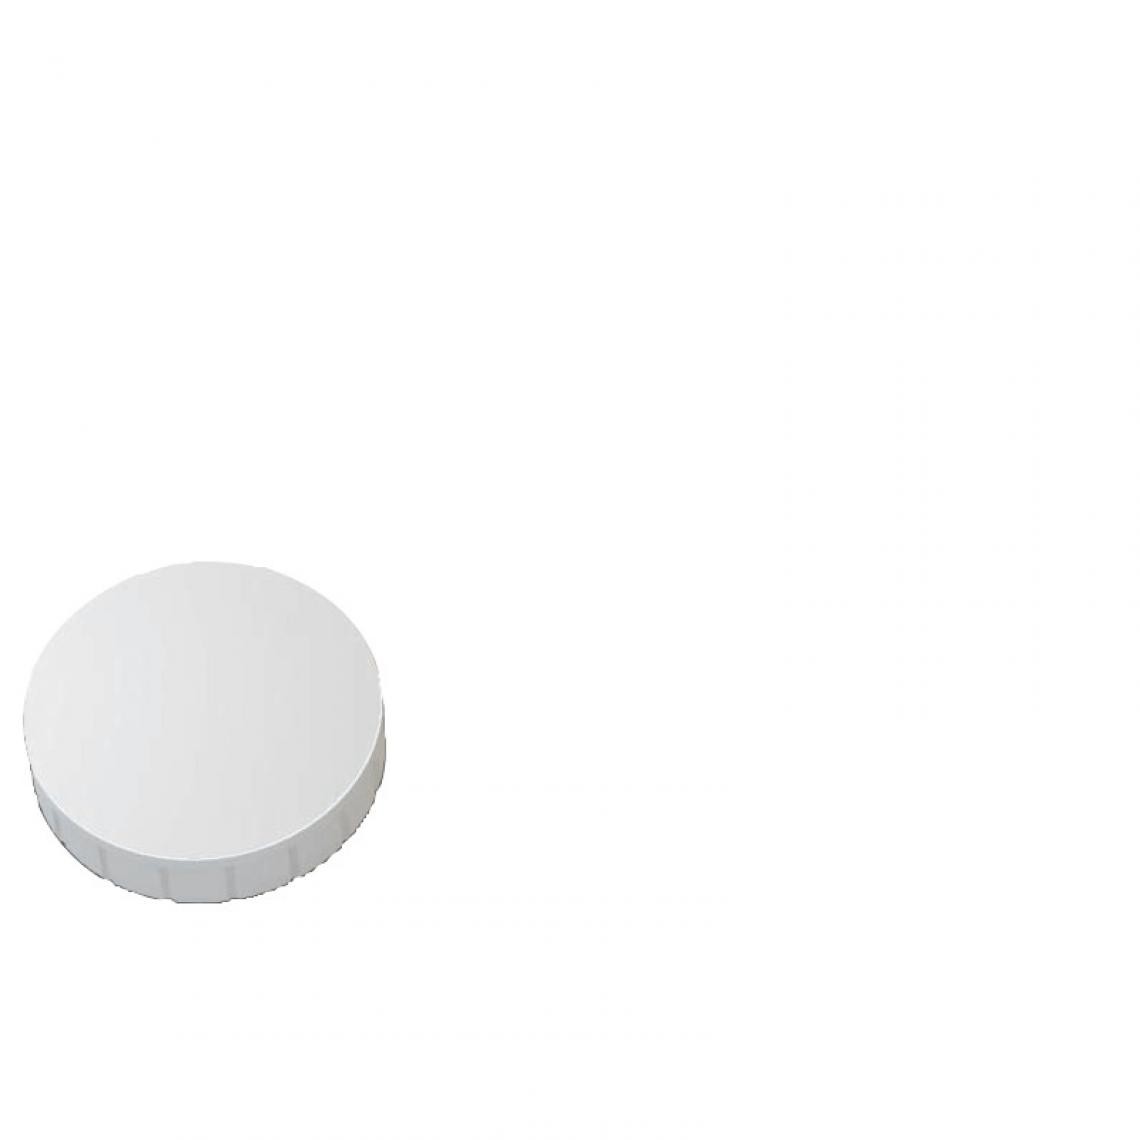 Maul - MAUL Aimant solide, capacité de charge: 0,8 kg, blanc () - Visserie